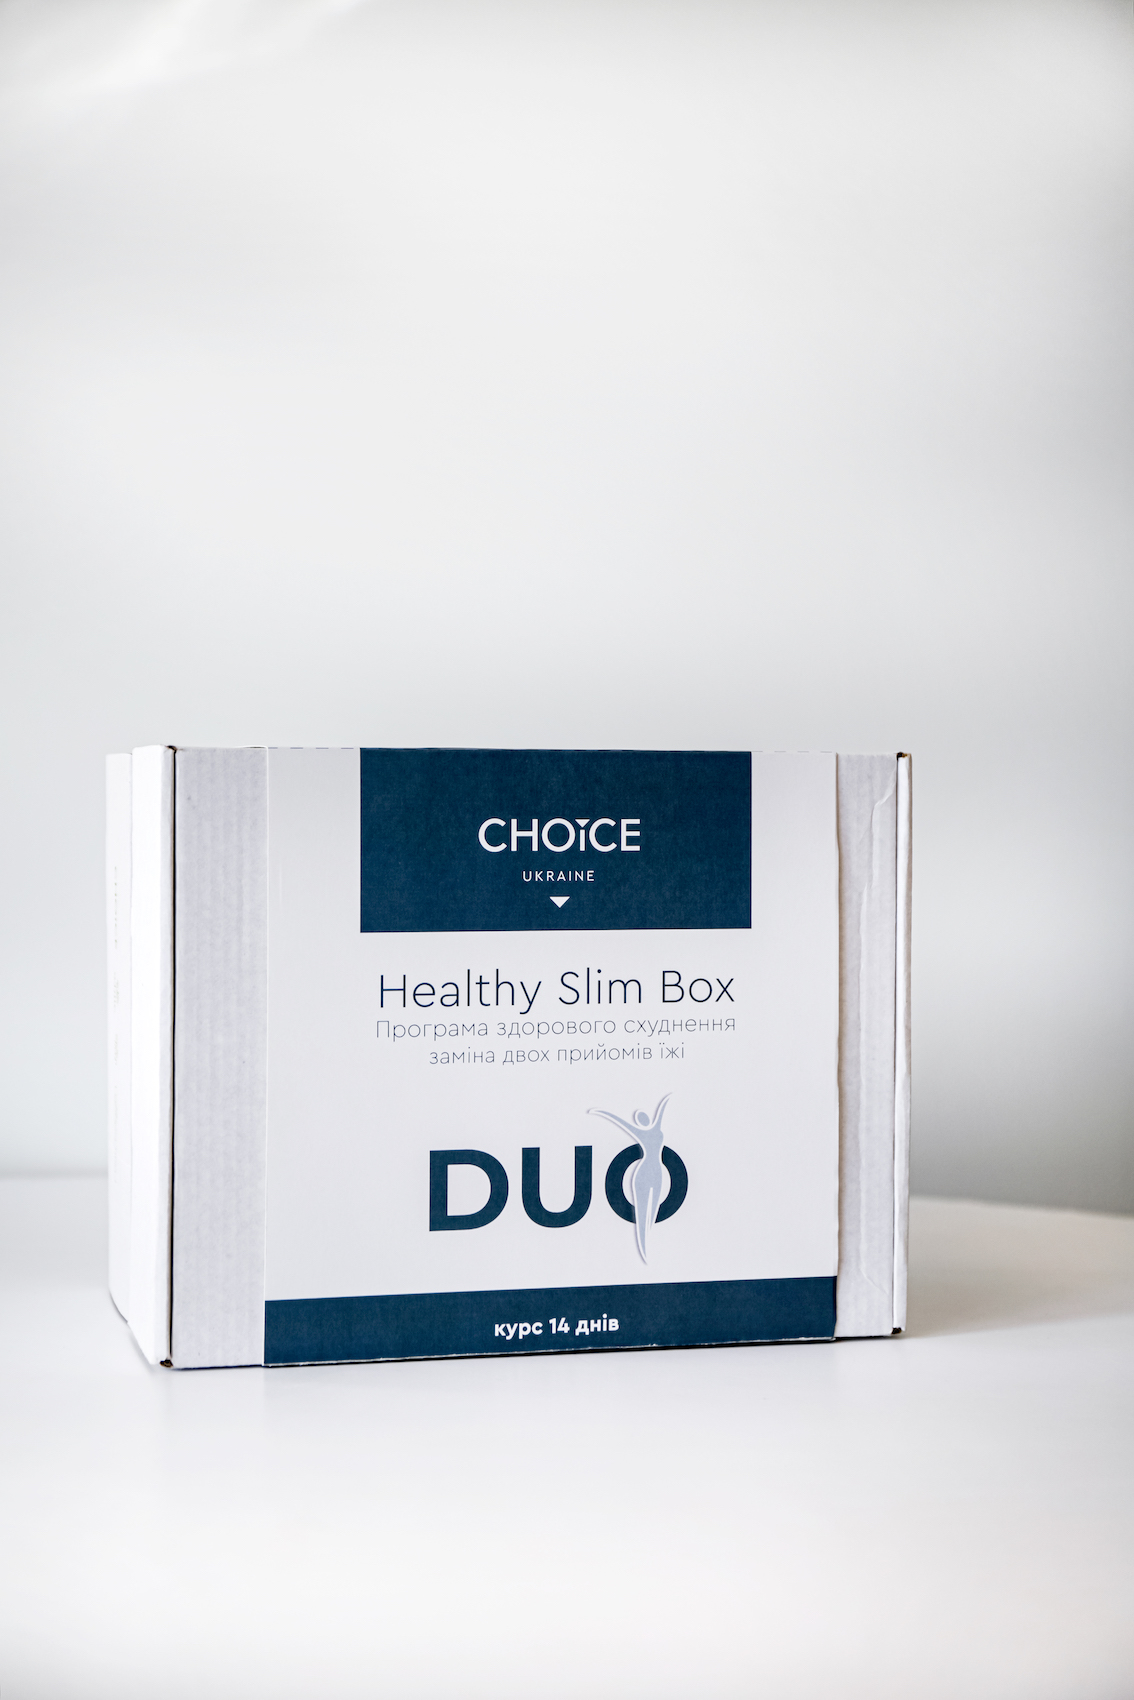 Програма здорового схуднення HEALTHY SLIM BOX DUO